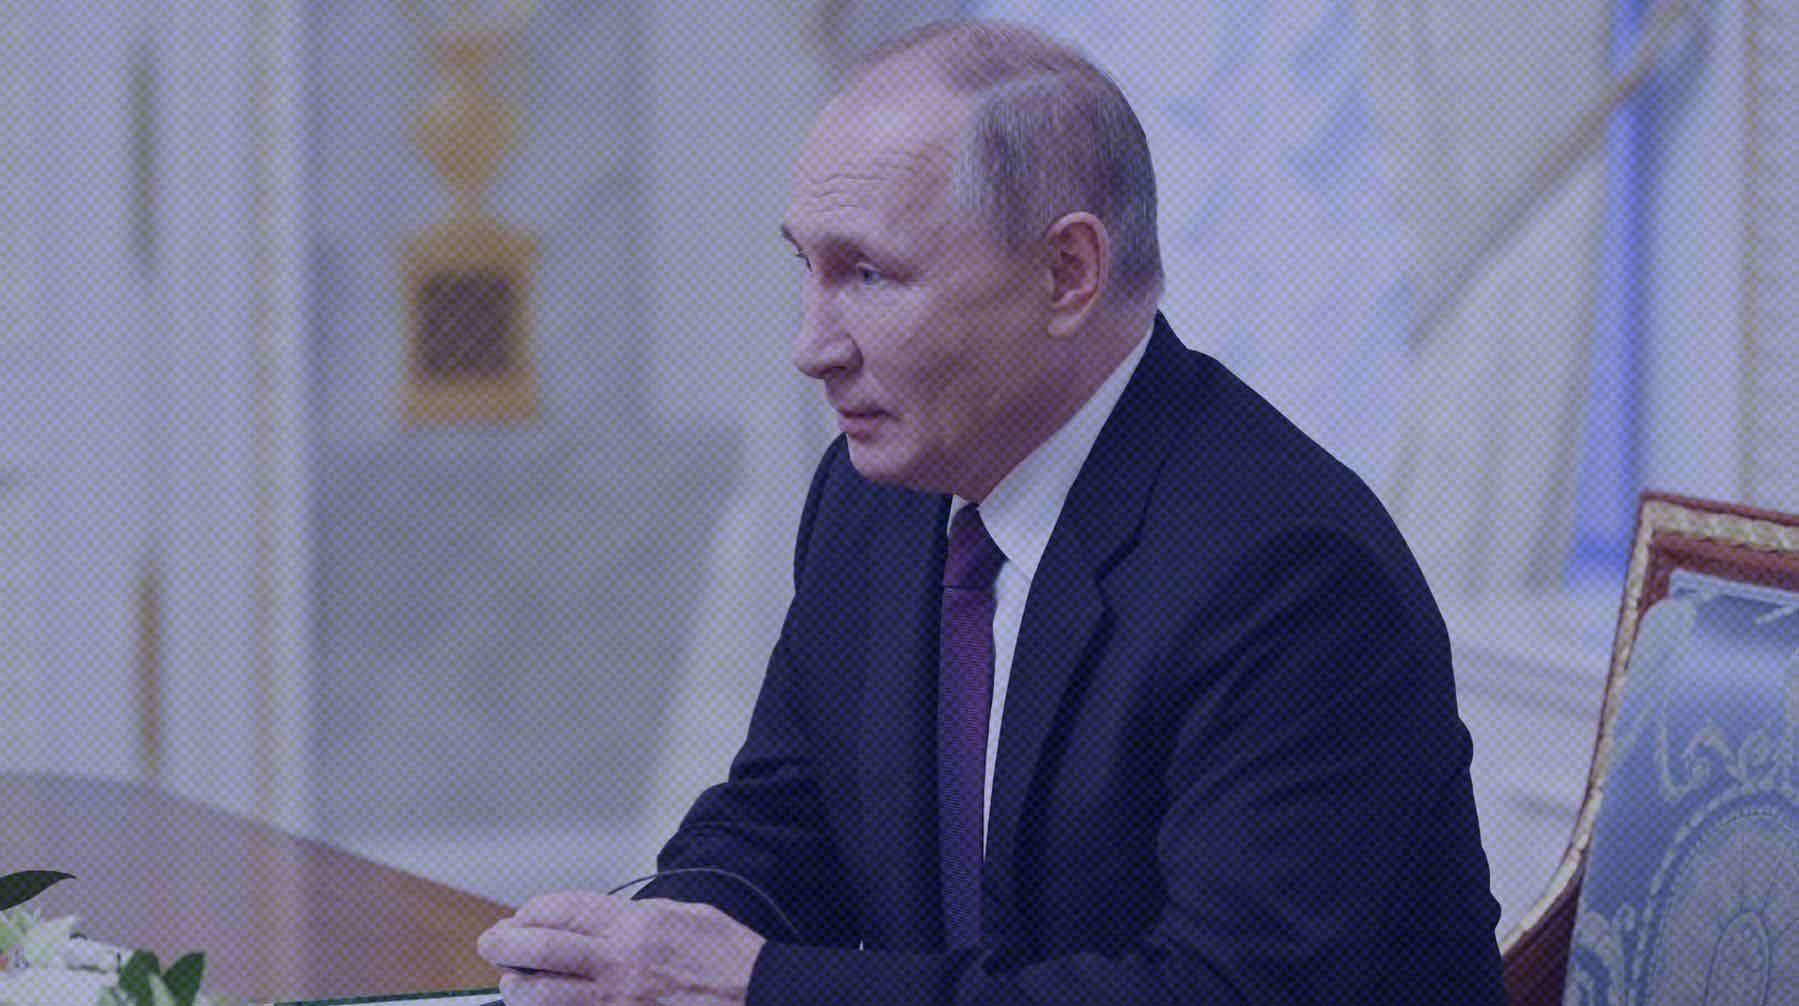 Dailystorm - Путин: Россия не станет поставлять энергоресурсы странам, которые ограничат цены на нефть